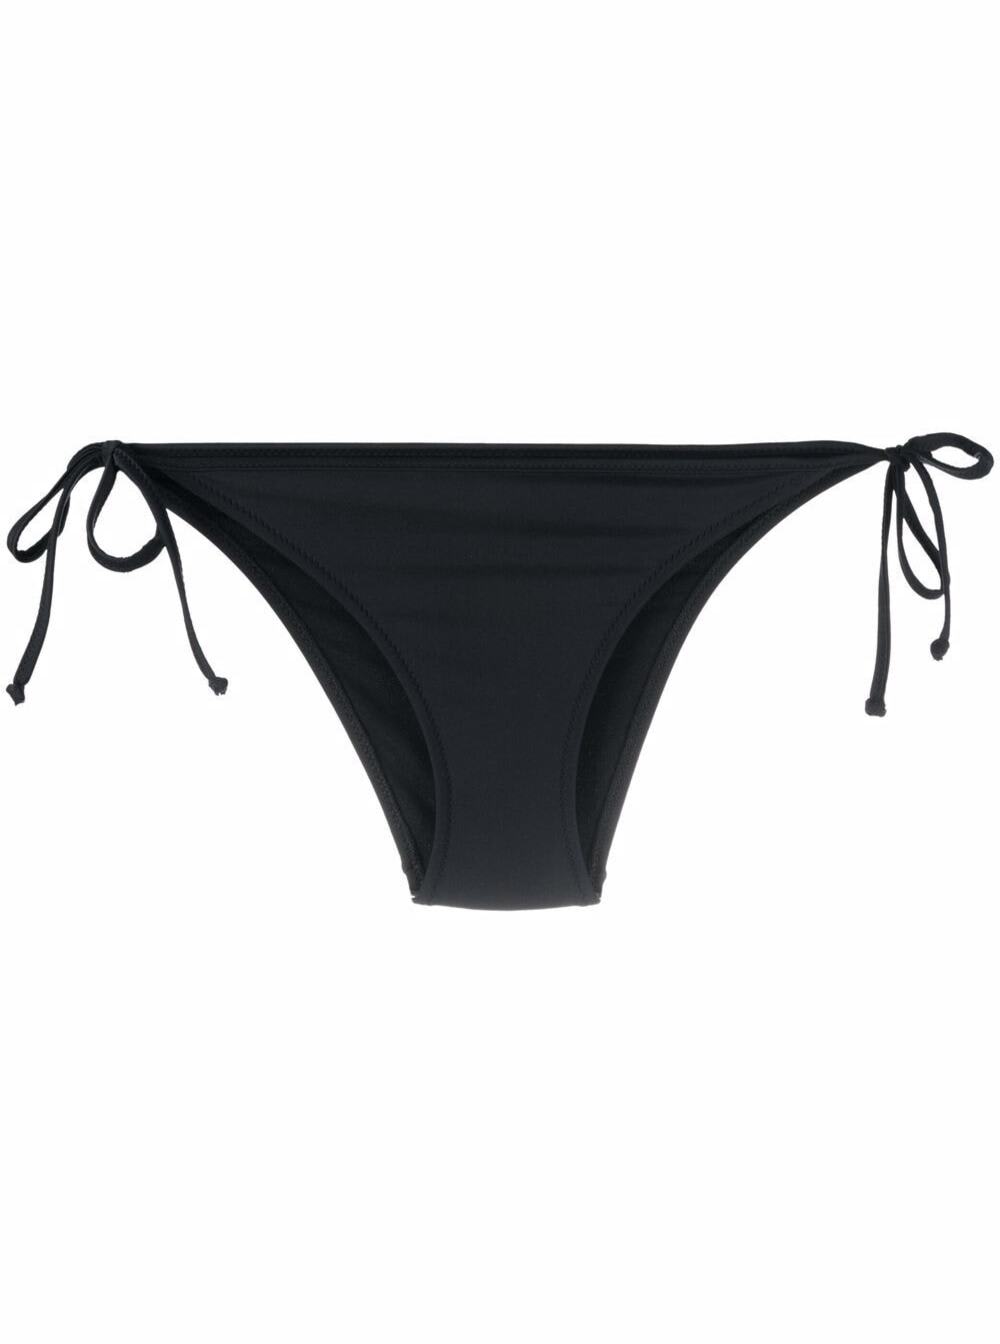 Chiara Ferragni Side Tie Brief Iconic Eyestar Bikini Bottom